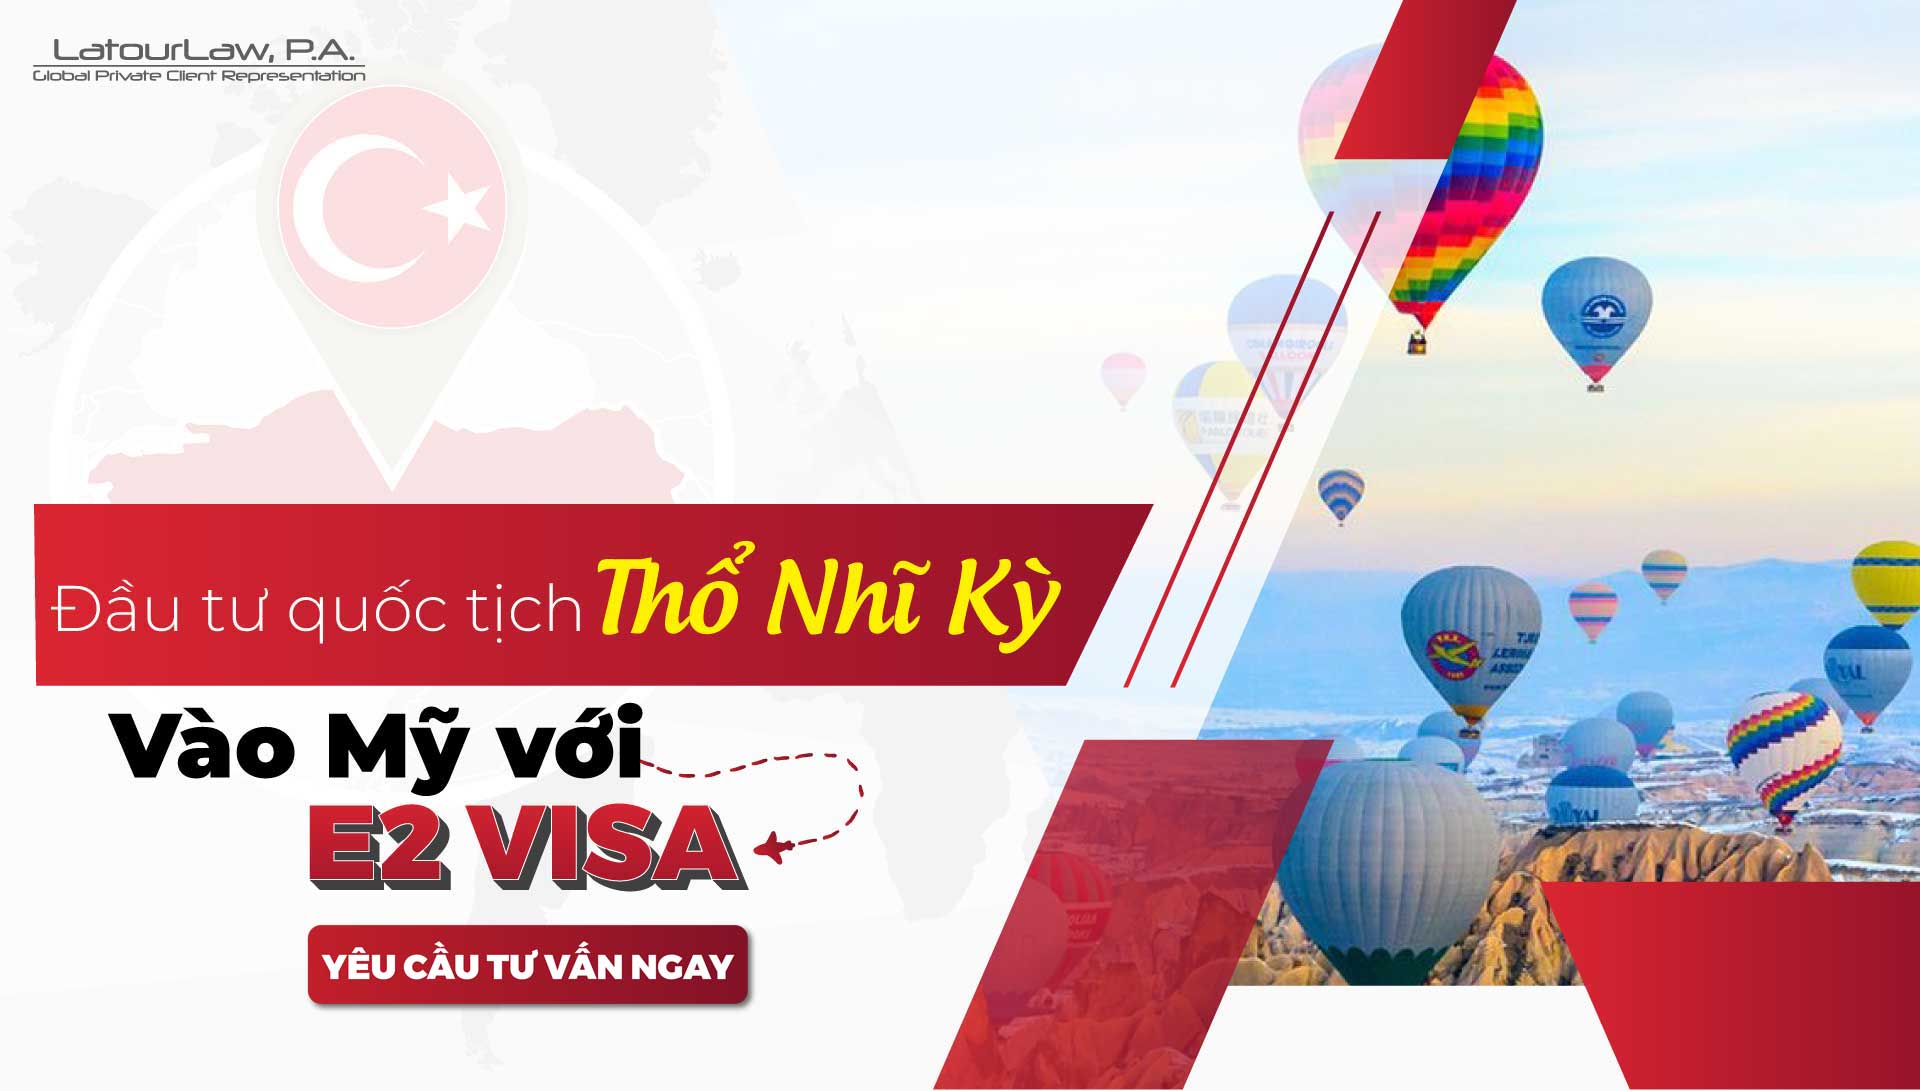 Quốc Tịch Thổ Nhĩ Kỳ (Turkey) vào Mỹ với E2 Visa